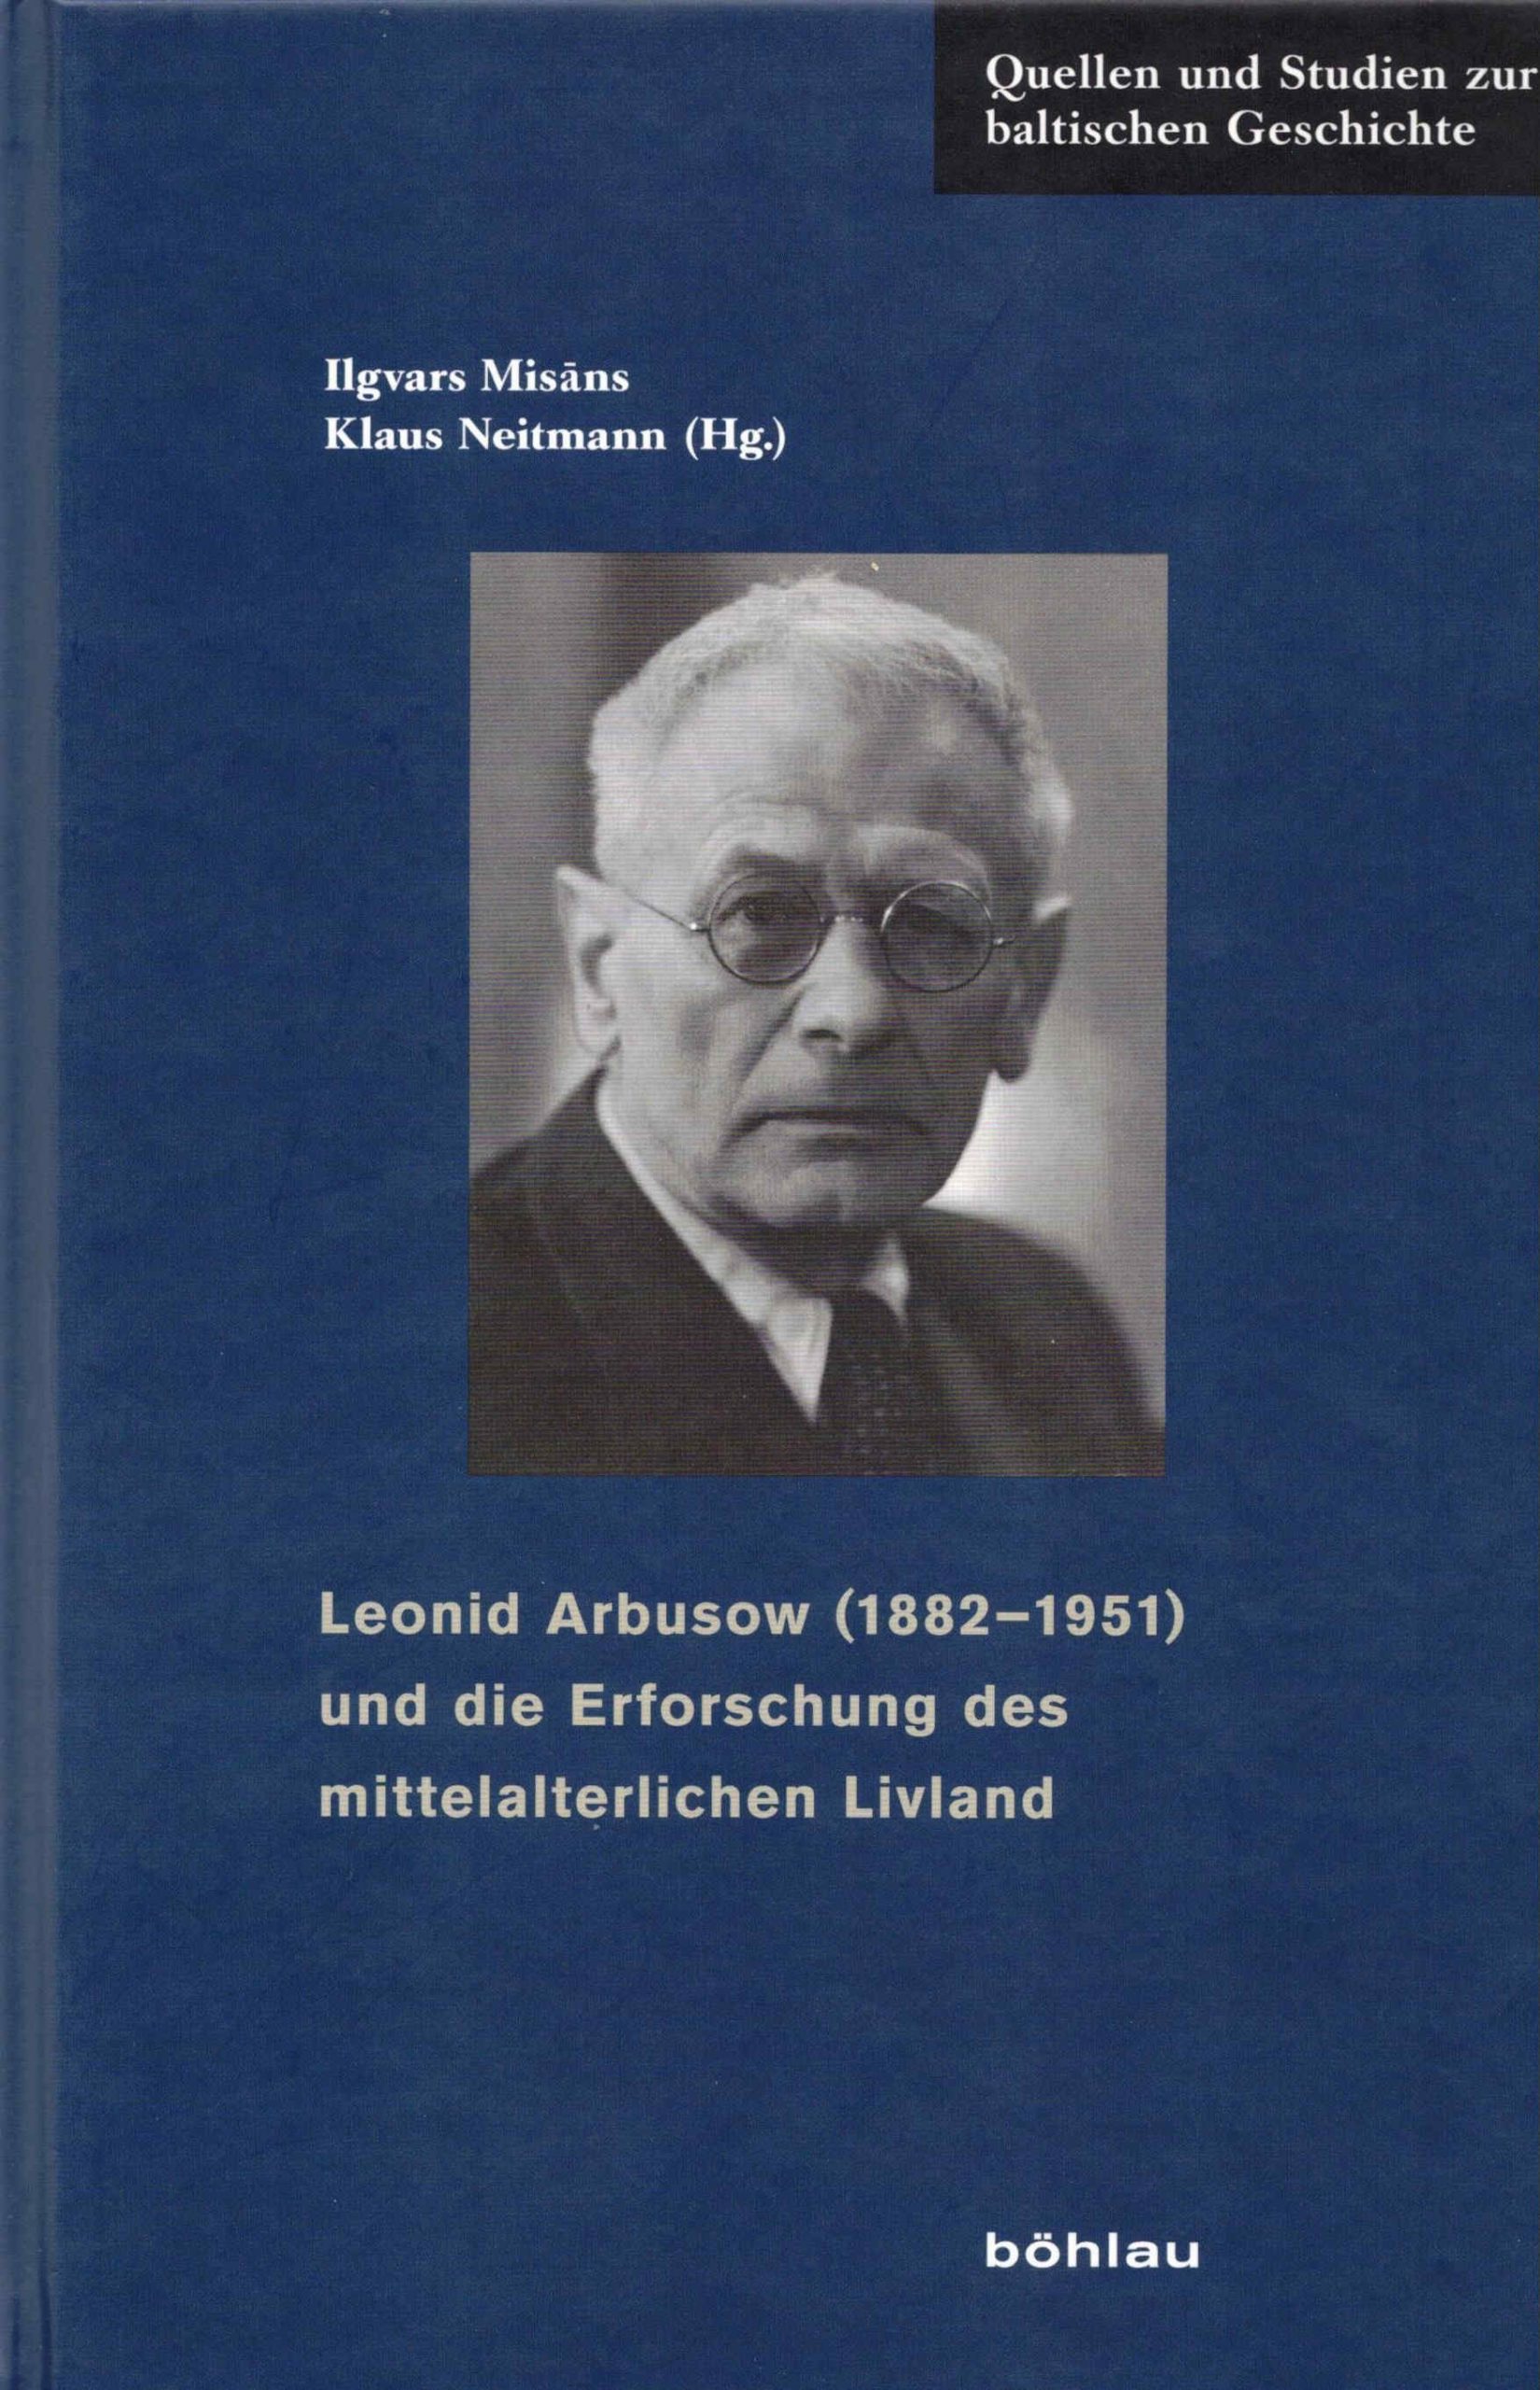 Band 24: Leonid Arbusow (1882-1951) und die Erforschung des mittelalterlichen Livland